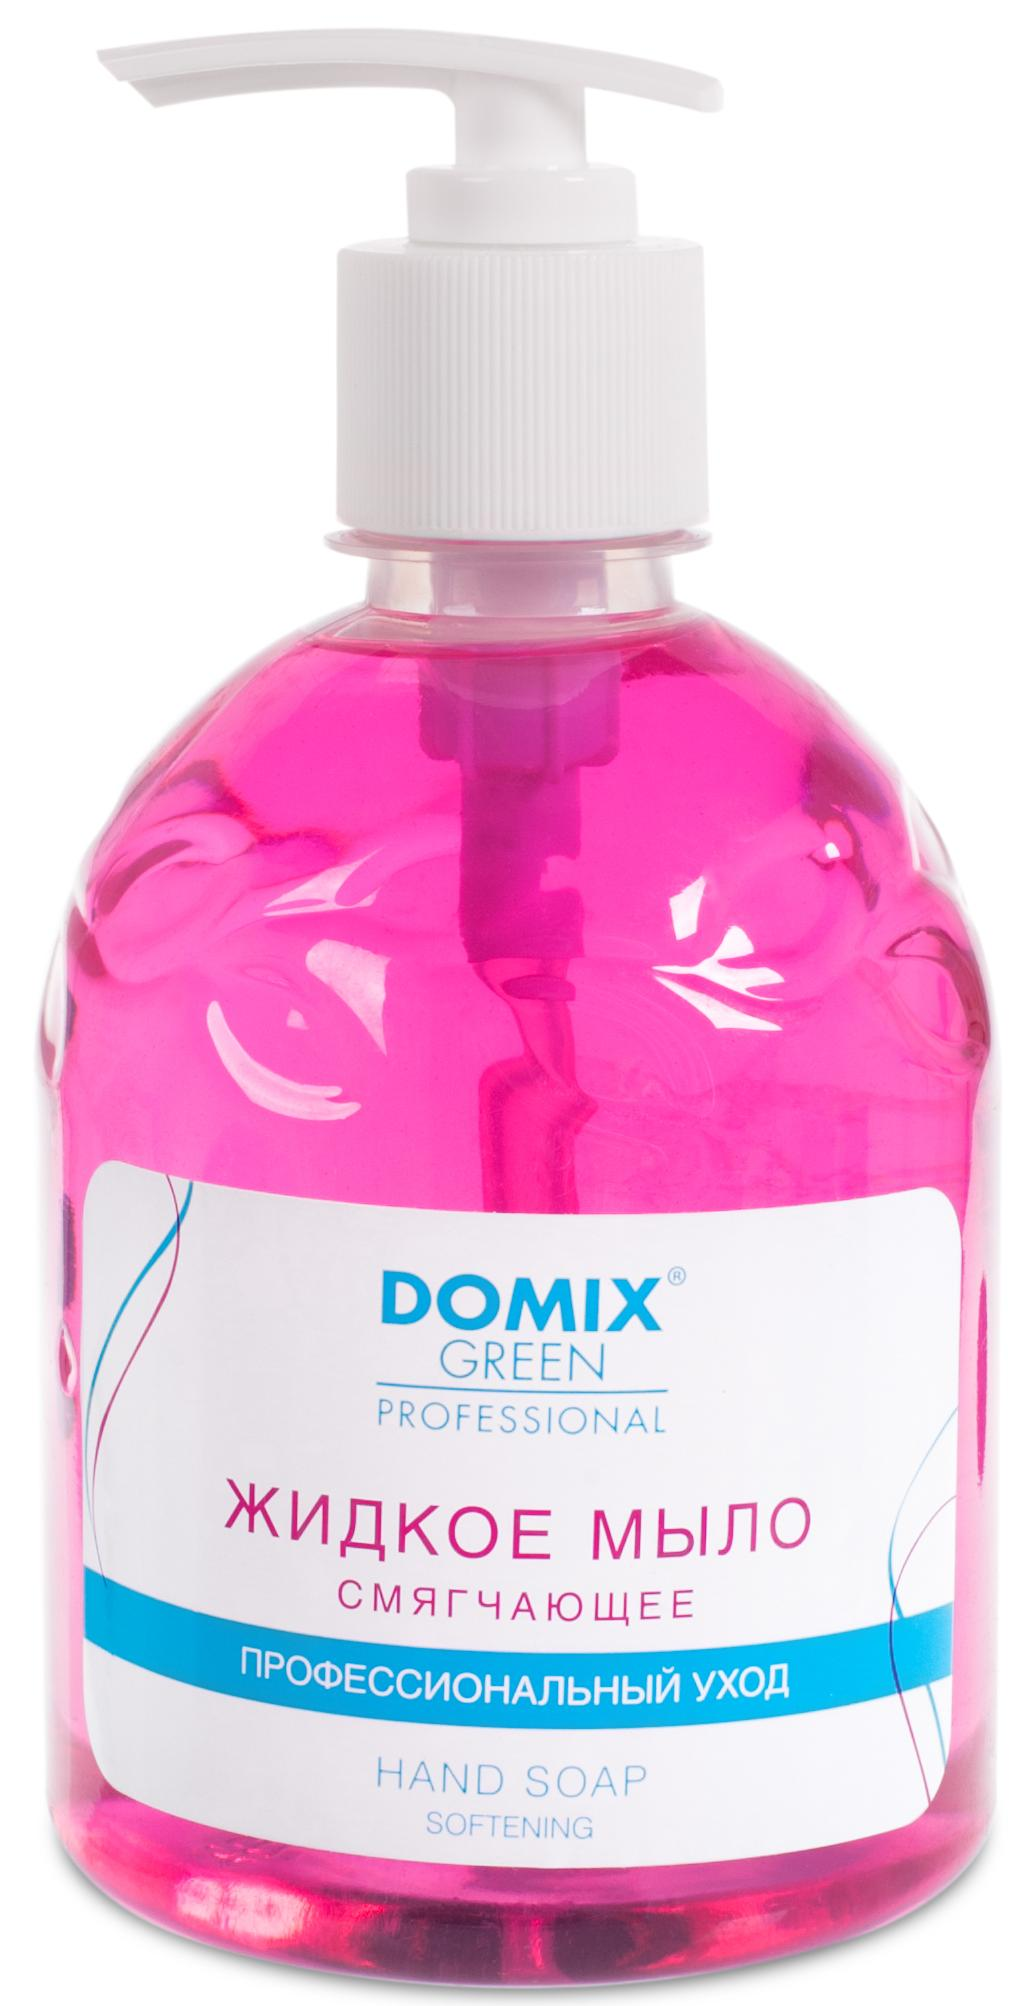 DOMIX Мыло жидкое смягчающее для профессионального ухода / DGP 500 мл domix средство для ускоренной подготовки к маникюру и педикюр жидкое лезвие dgp 3000 мл